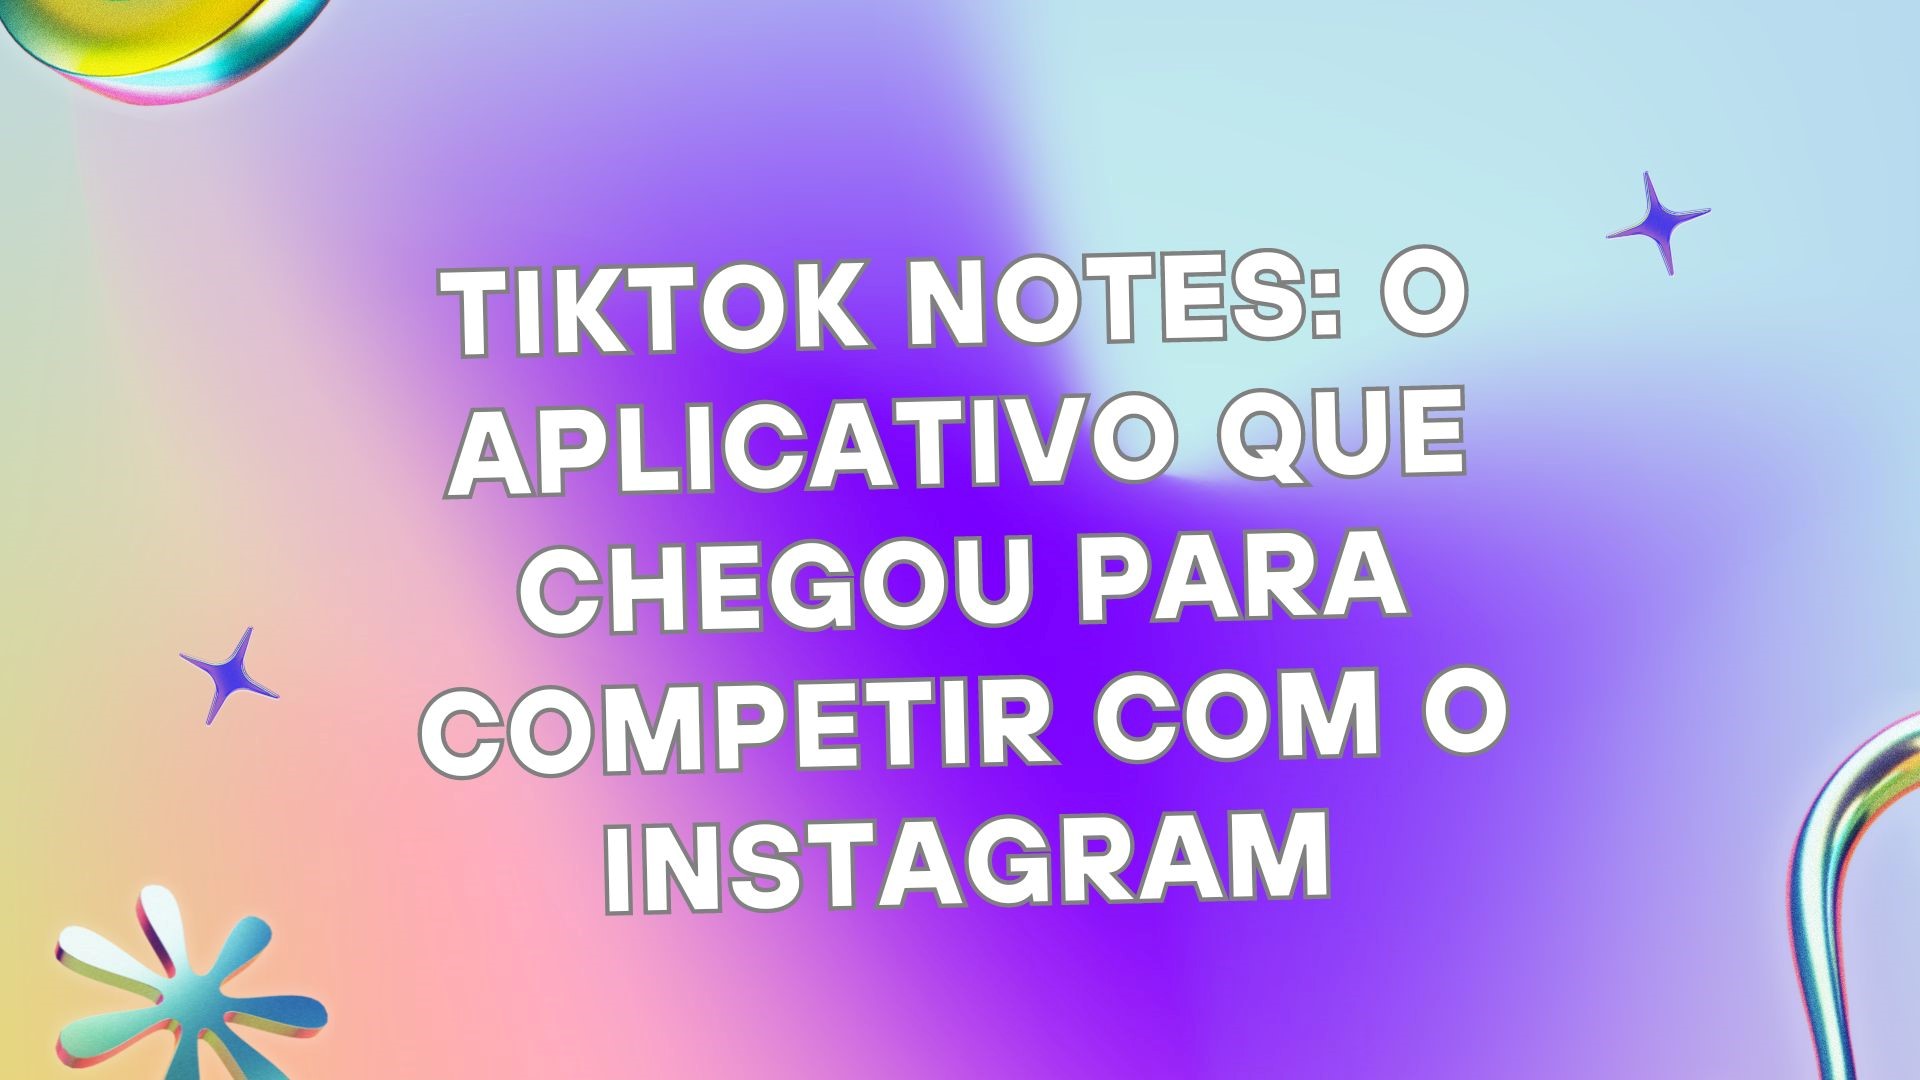 Tiktok Notes: O aplicativo que chegou para competir com o Instagram